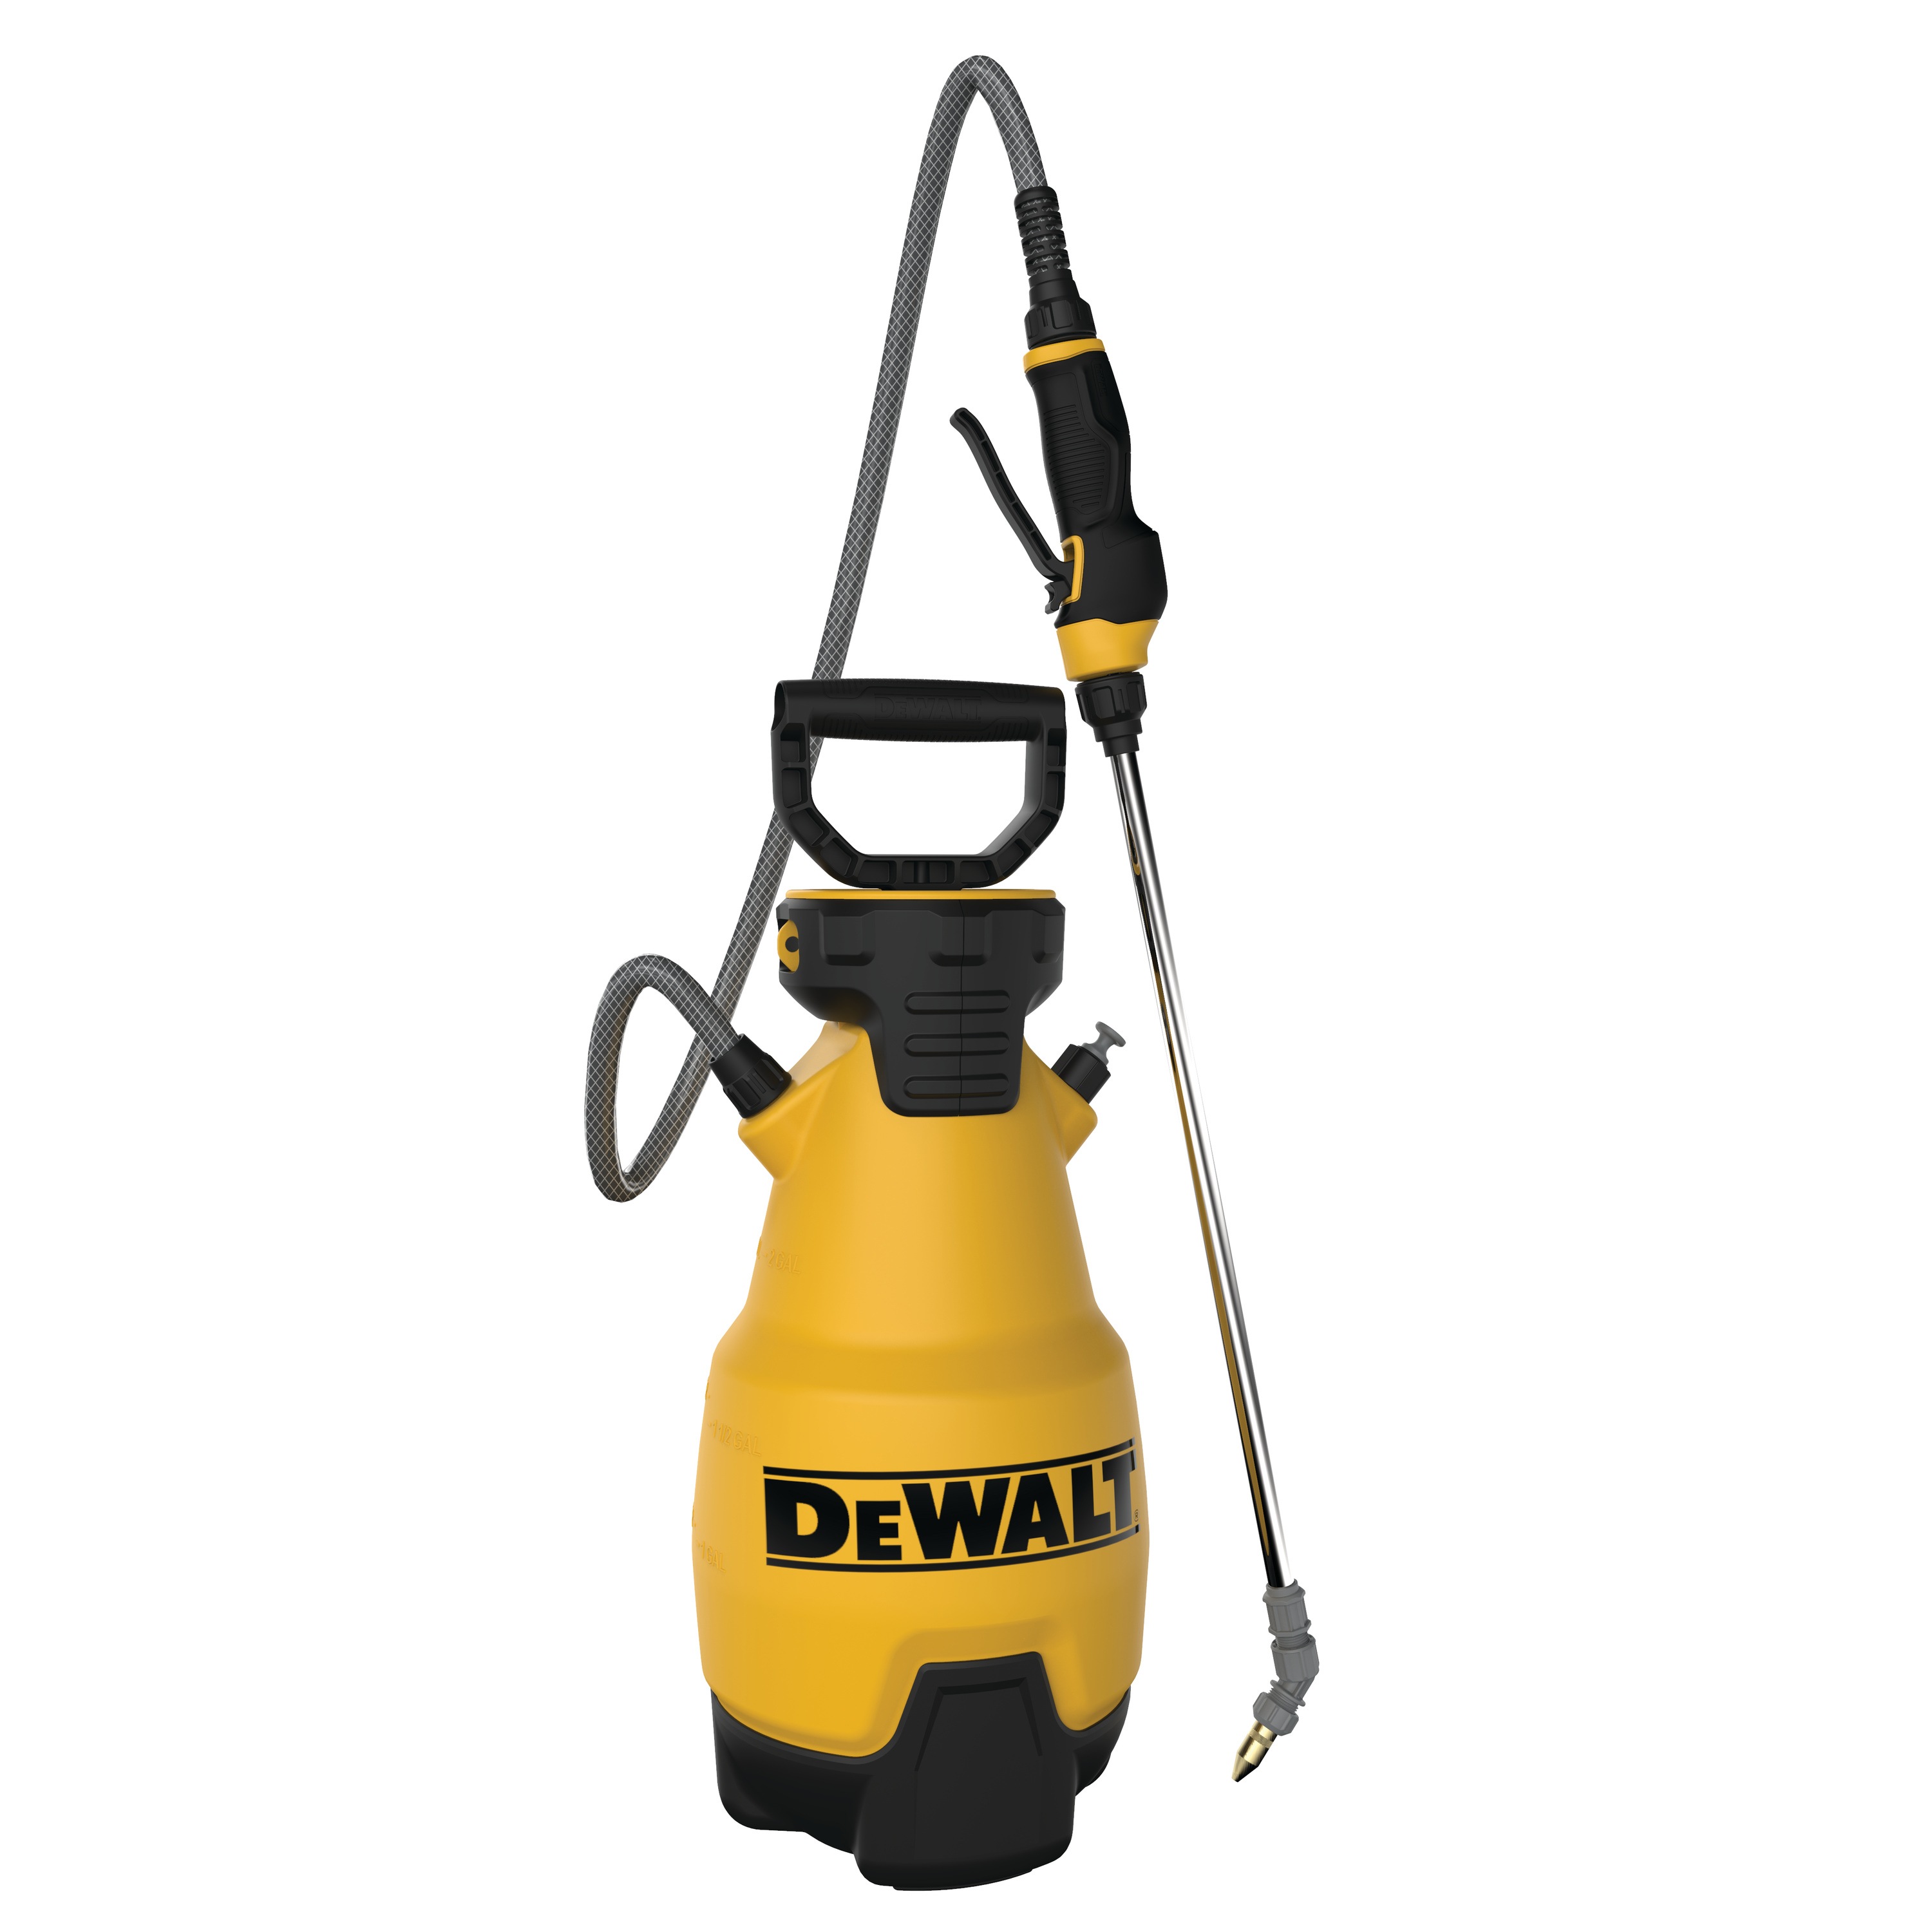 DEWALT - 2 gal Manual Pump Sprayer - 190612